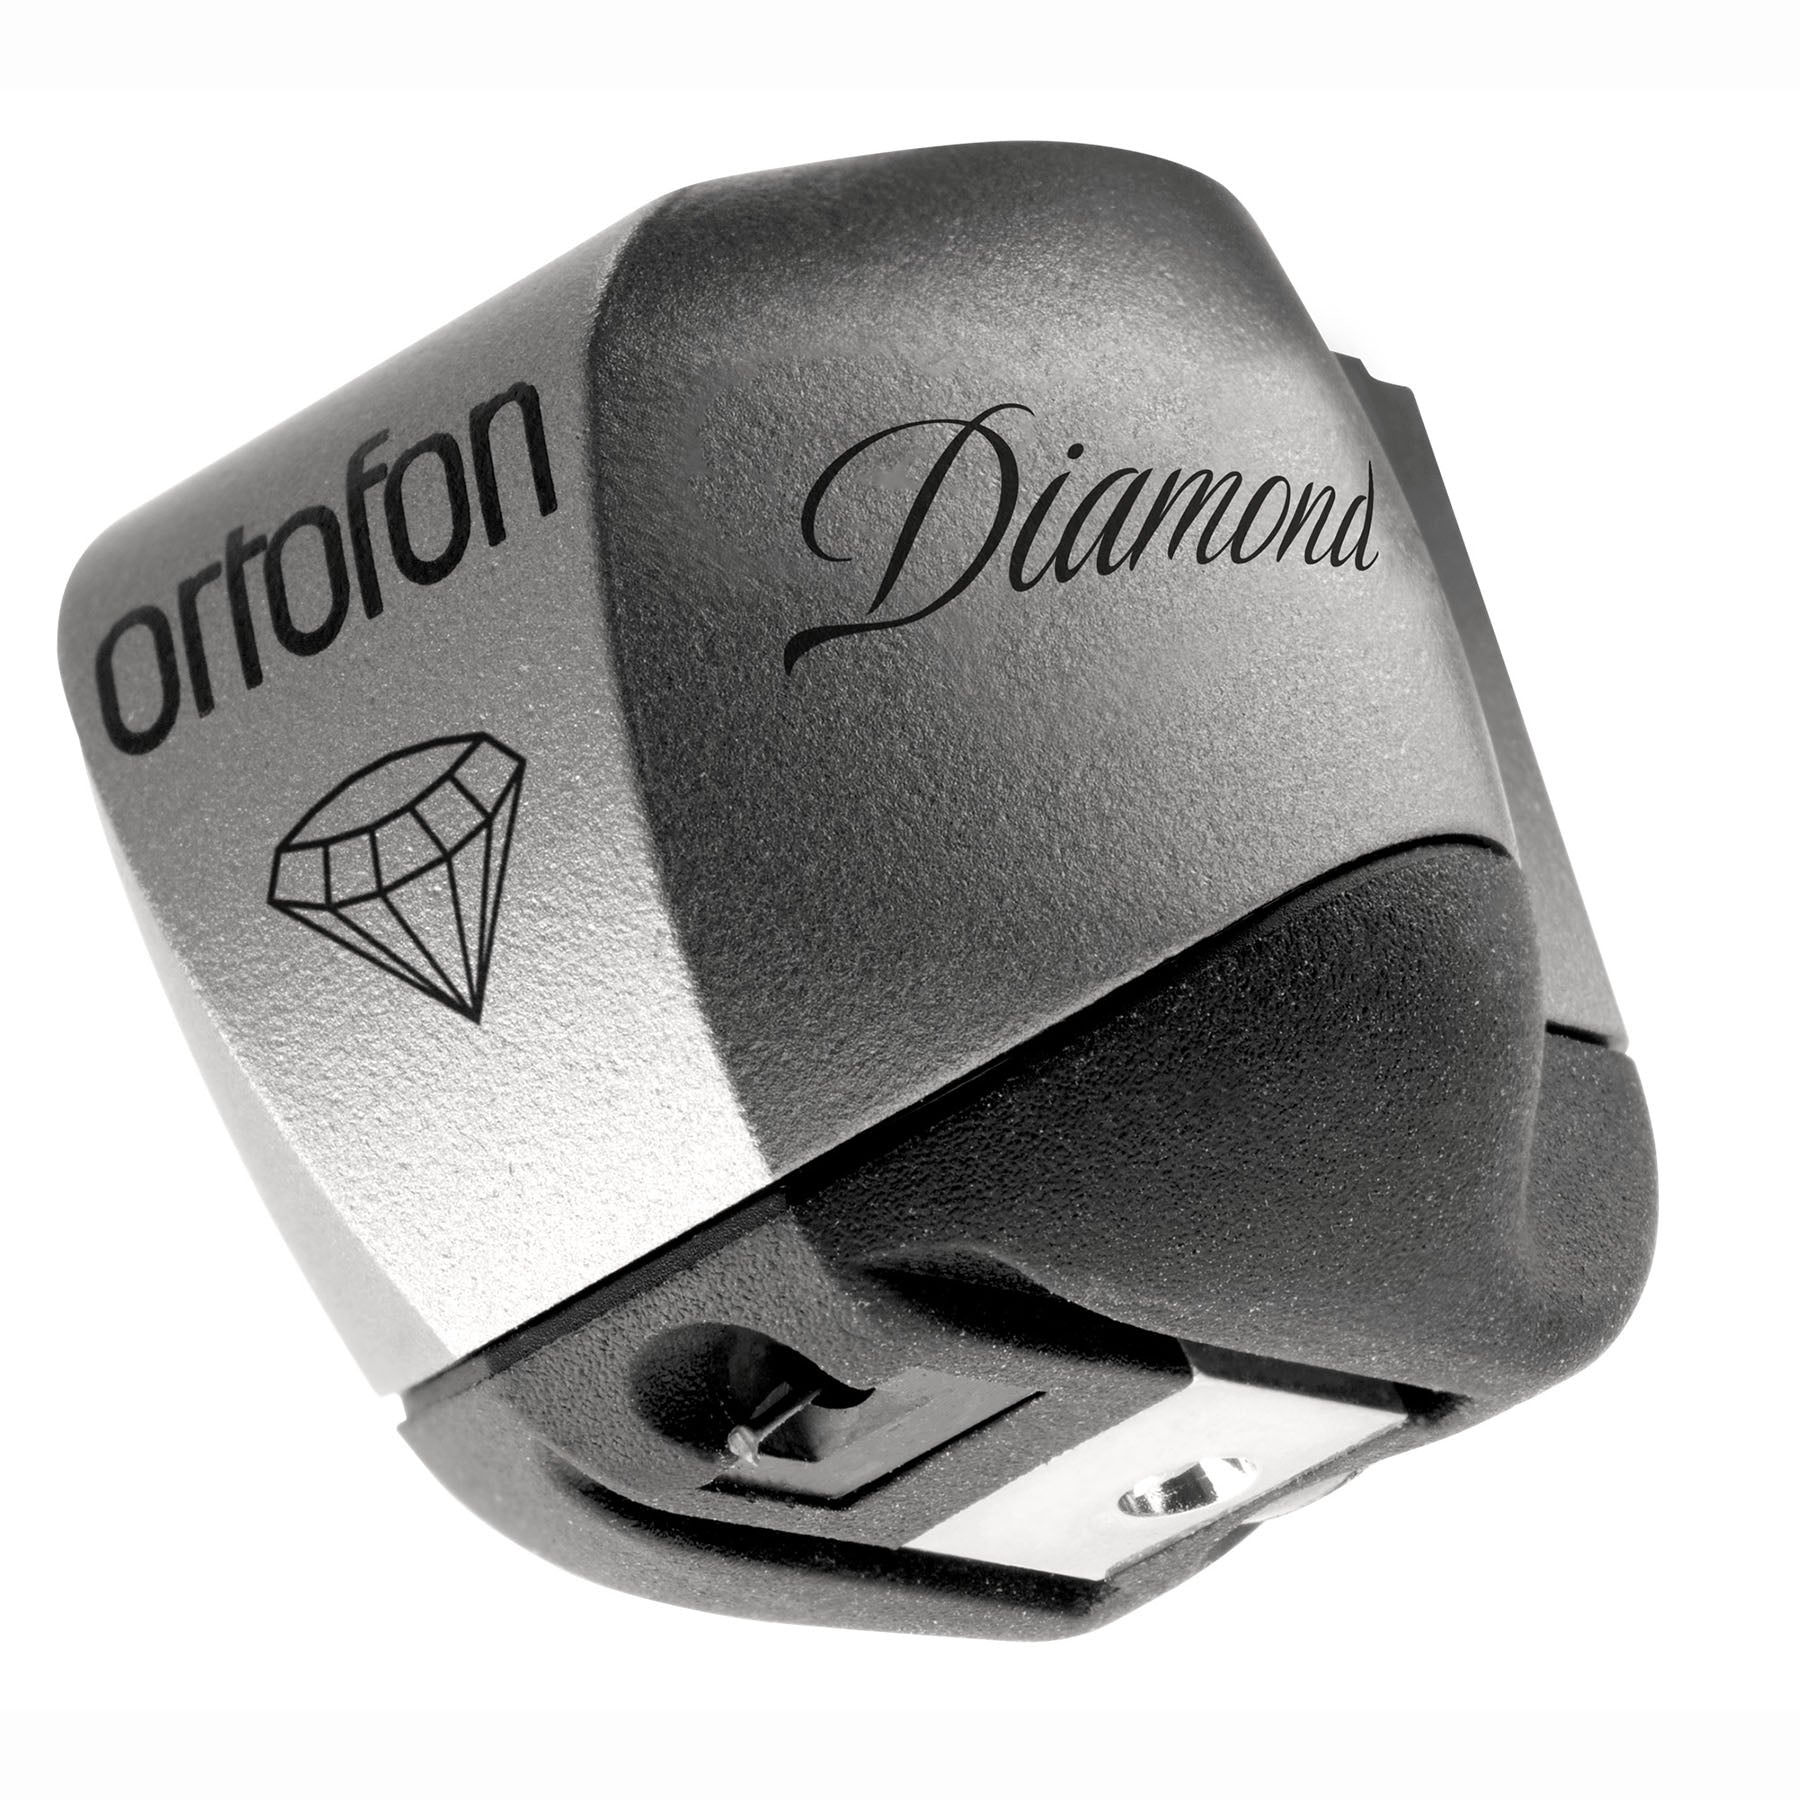 Ortofon Hi-Fi MC Diamond Moving Coil Cartridge